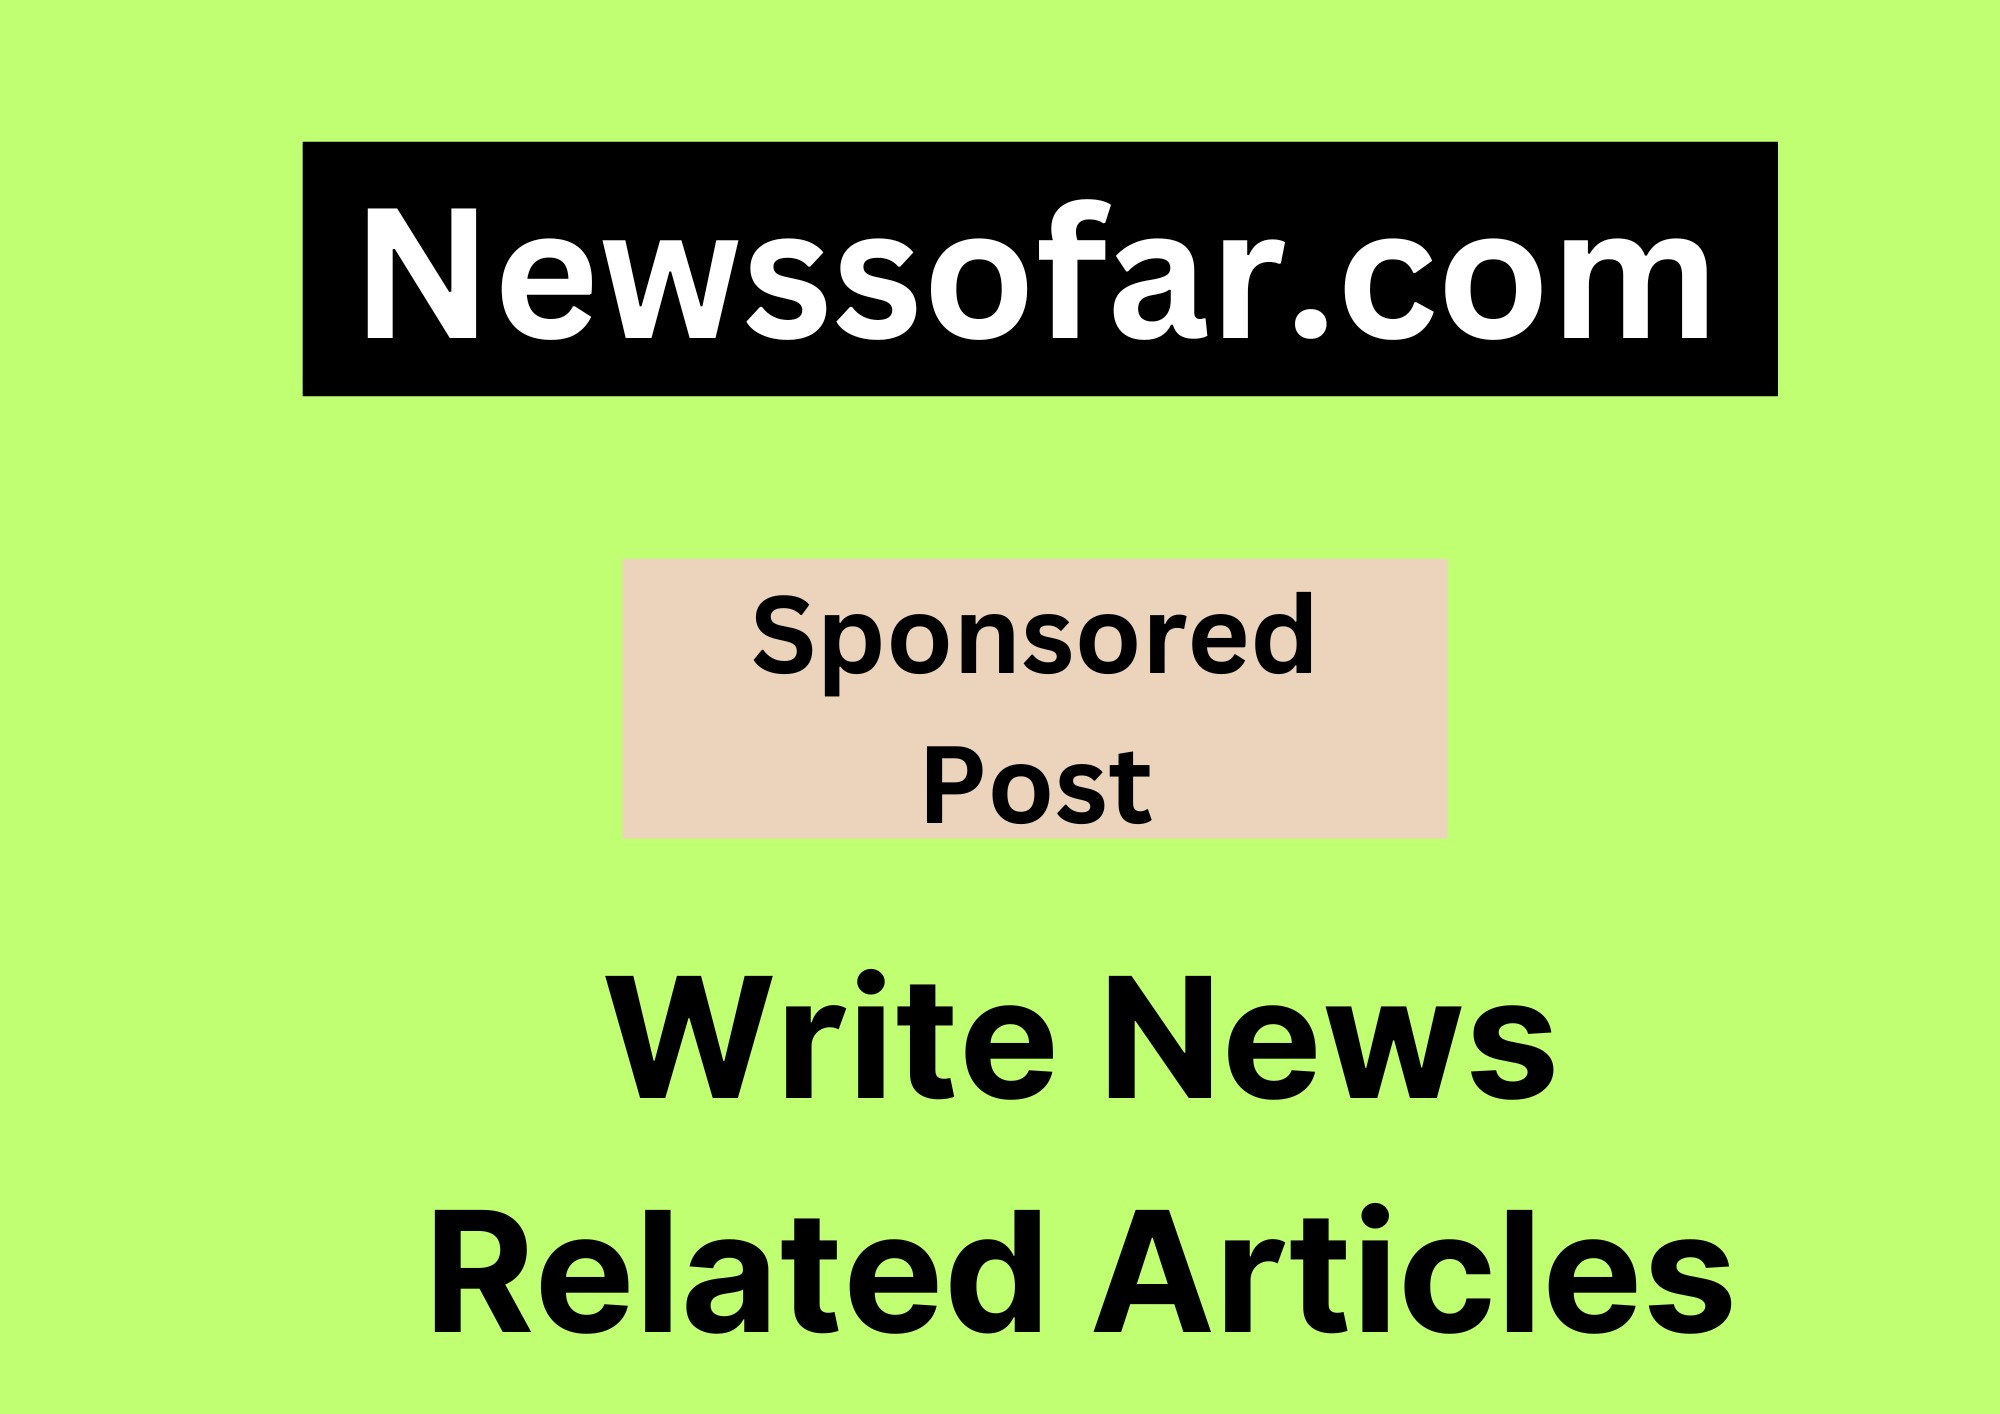 Newssofar.com - Write News Related Articles